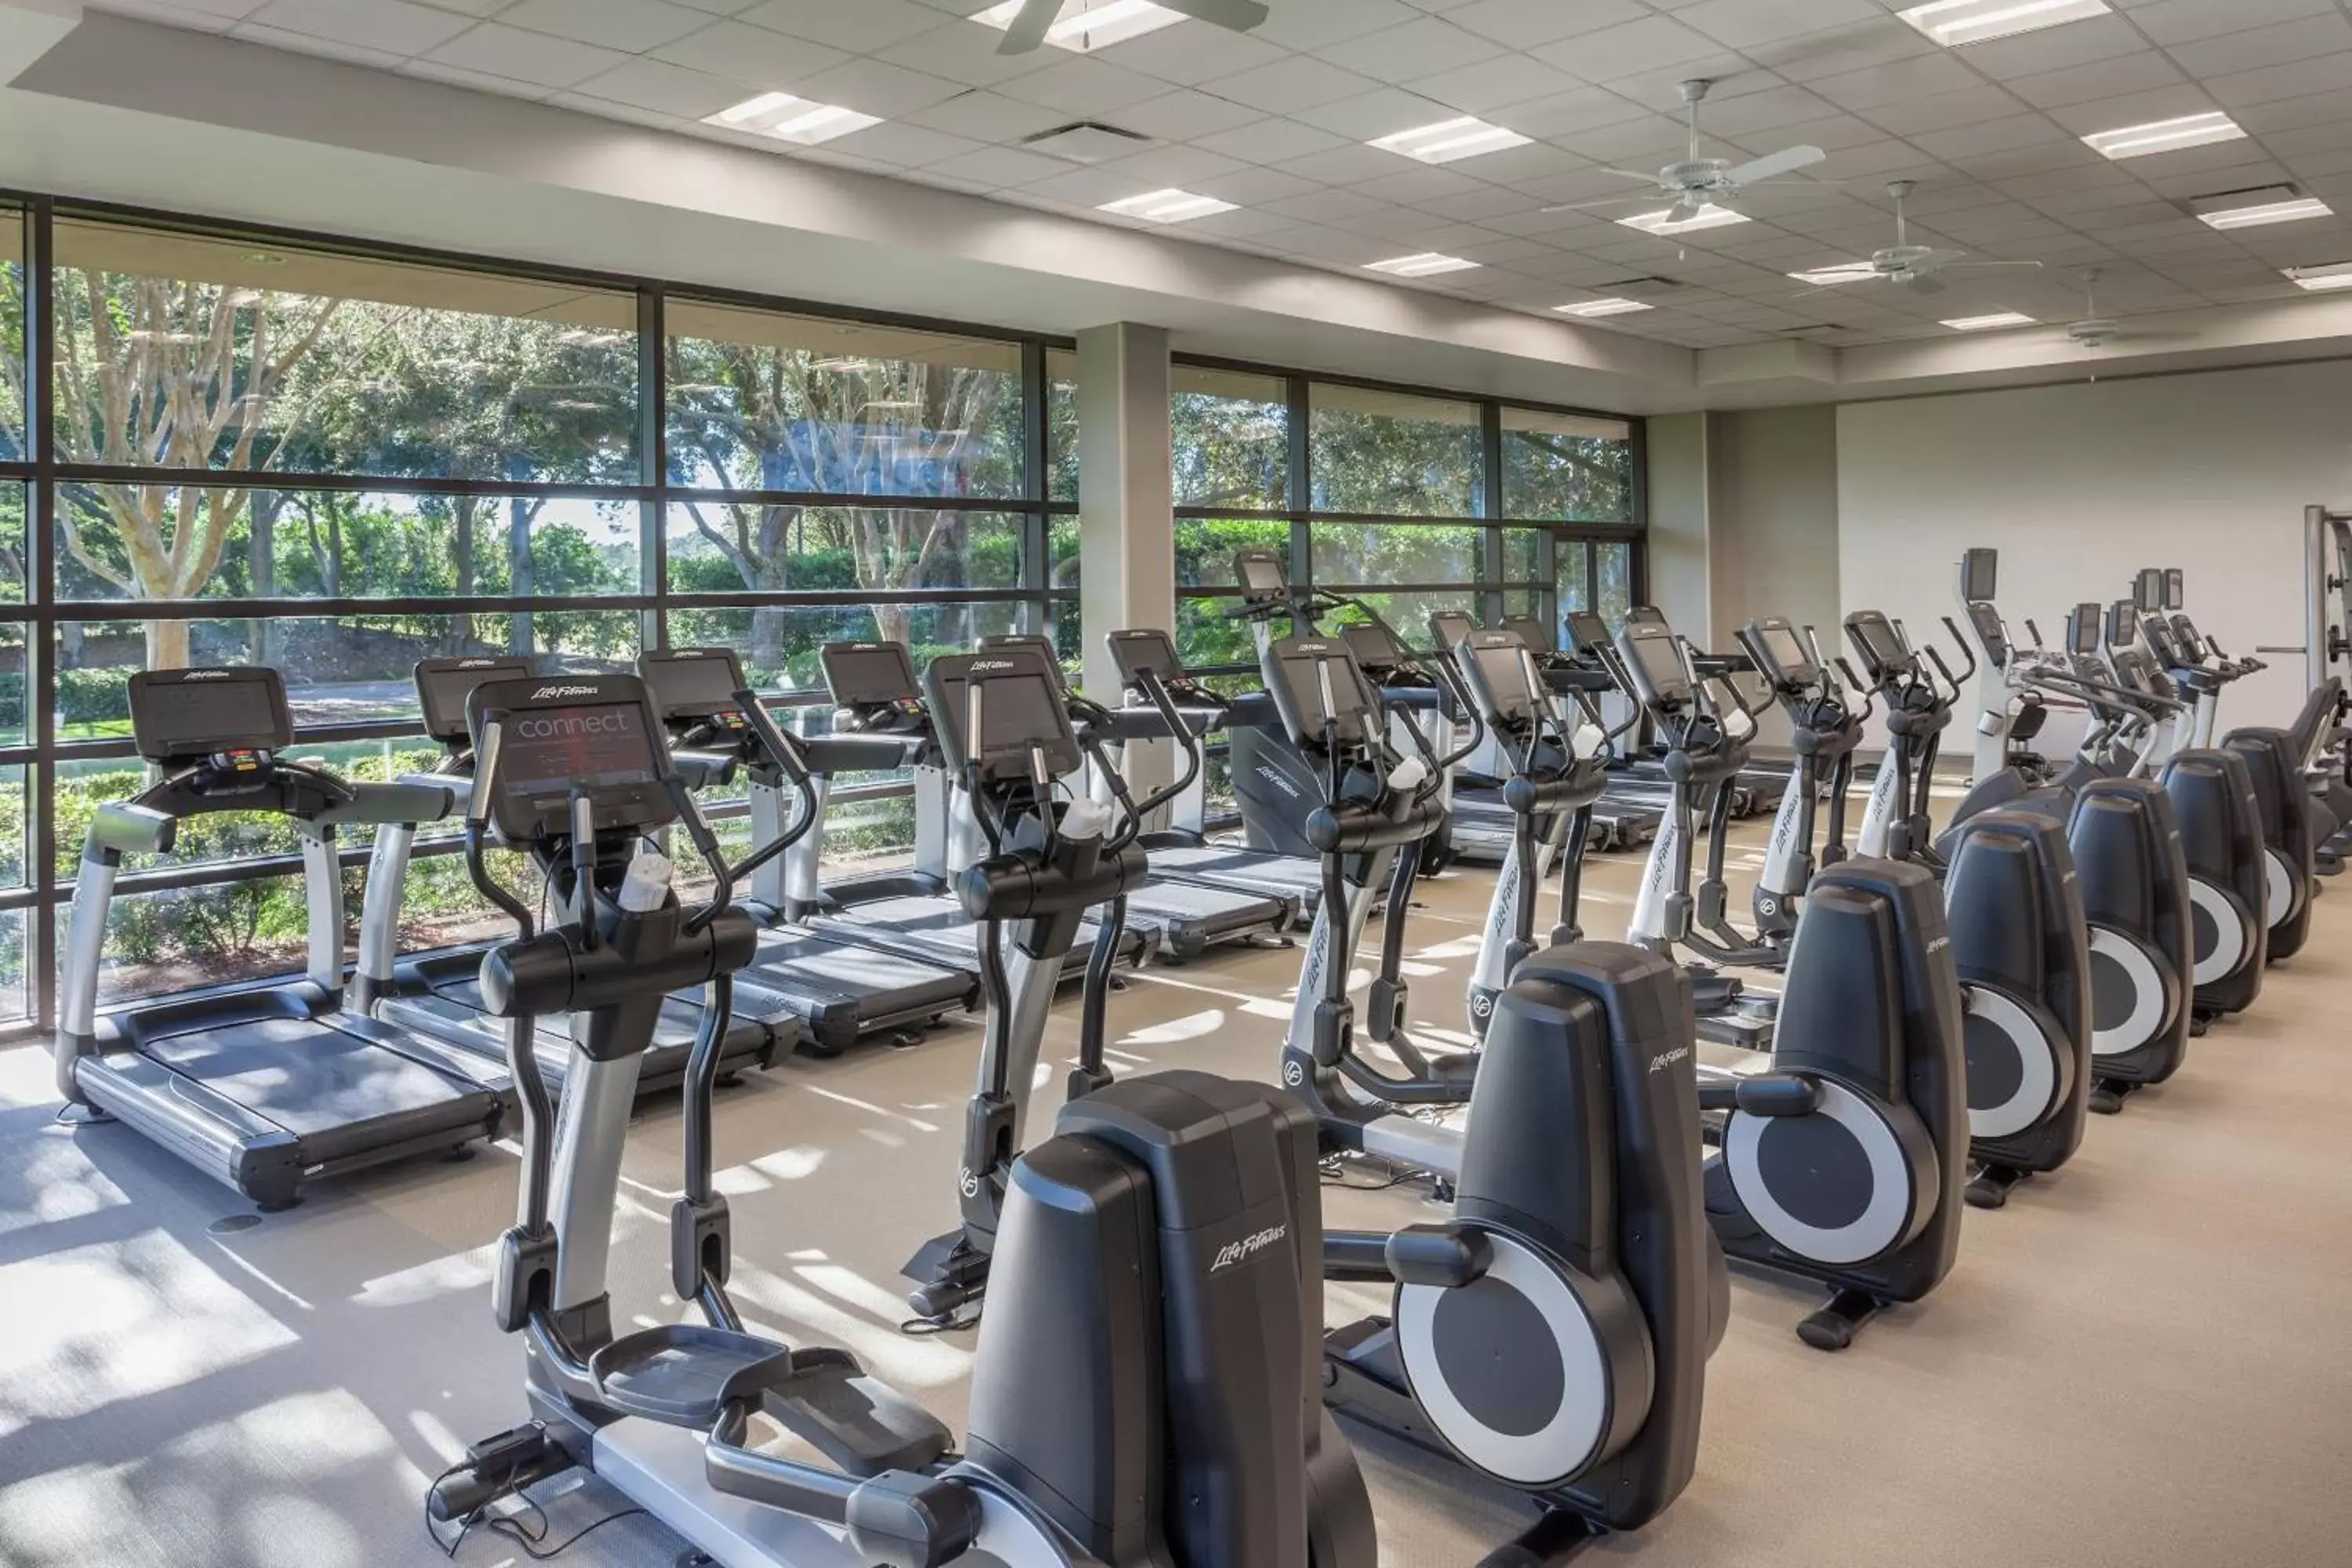 Fitness centre/facilities, Fitness Center/Facilities in Orlando World Center Marriott